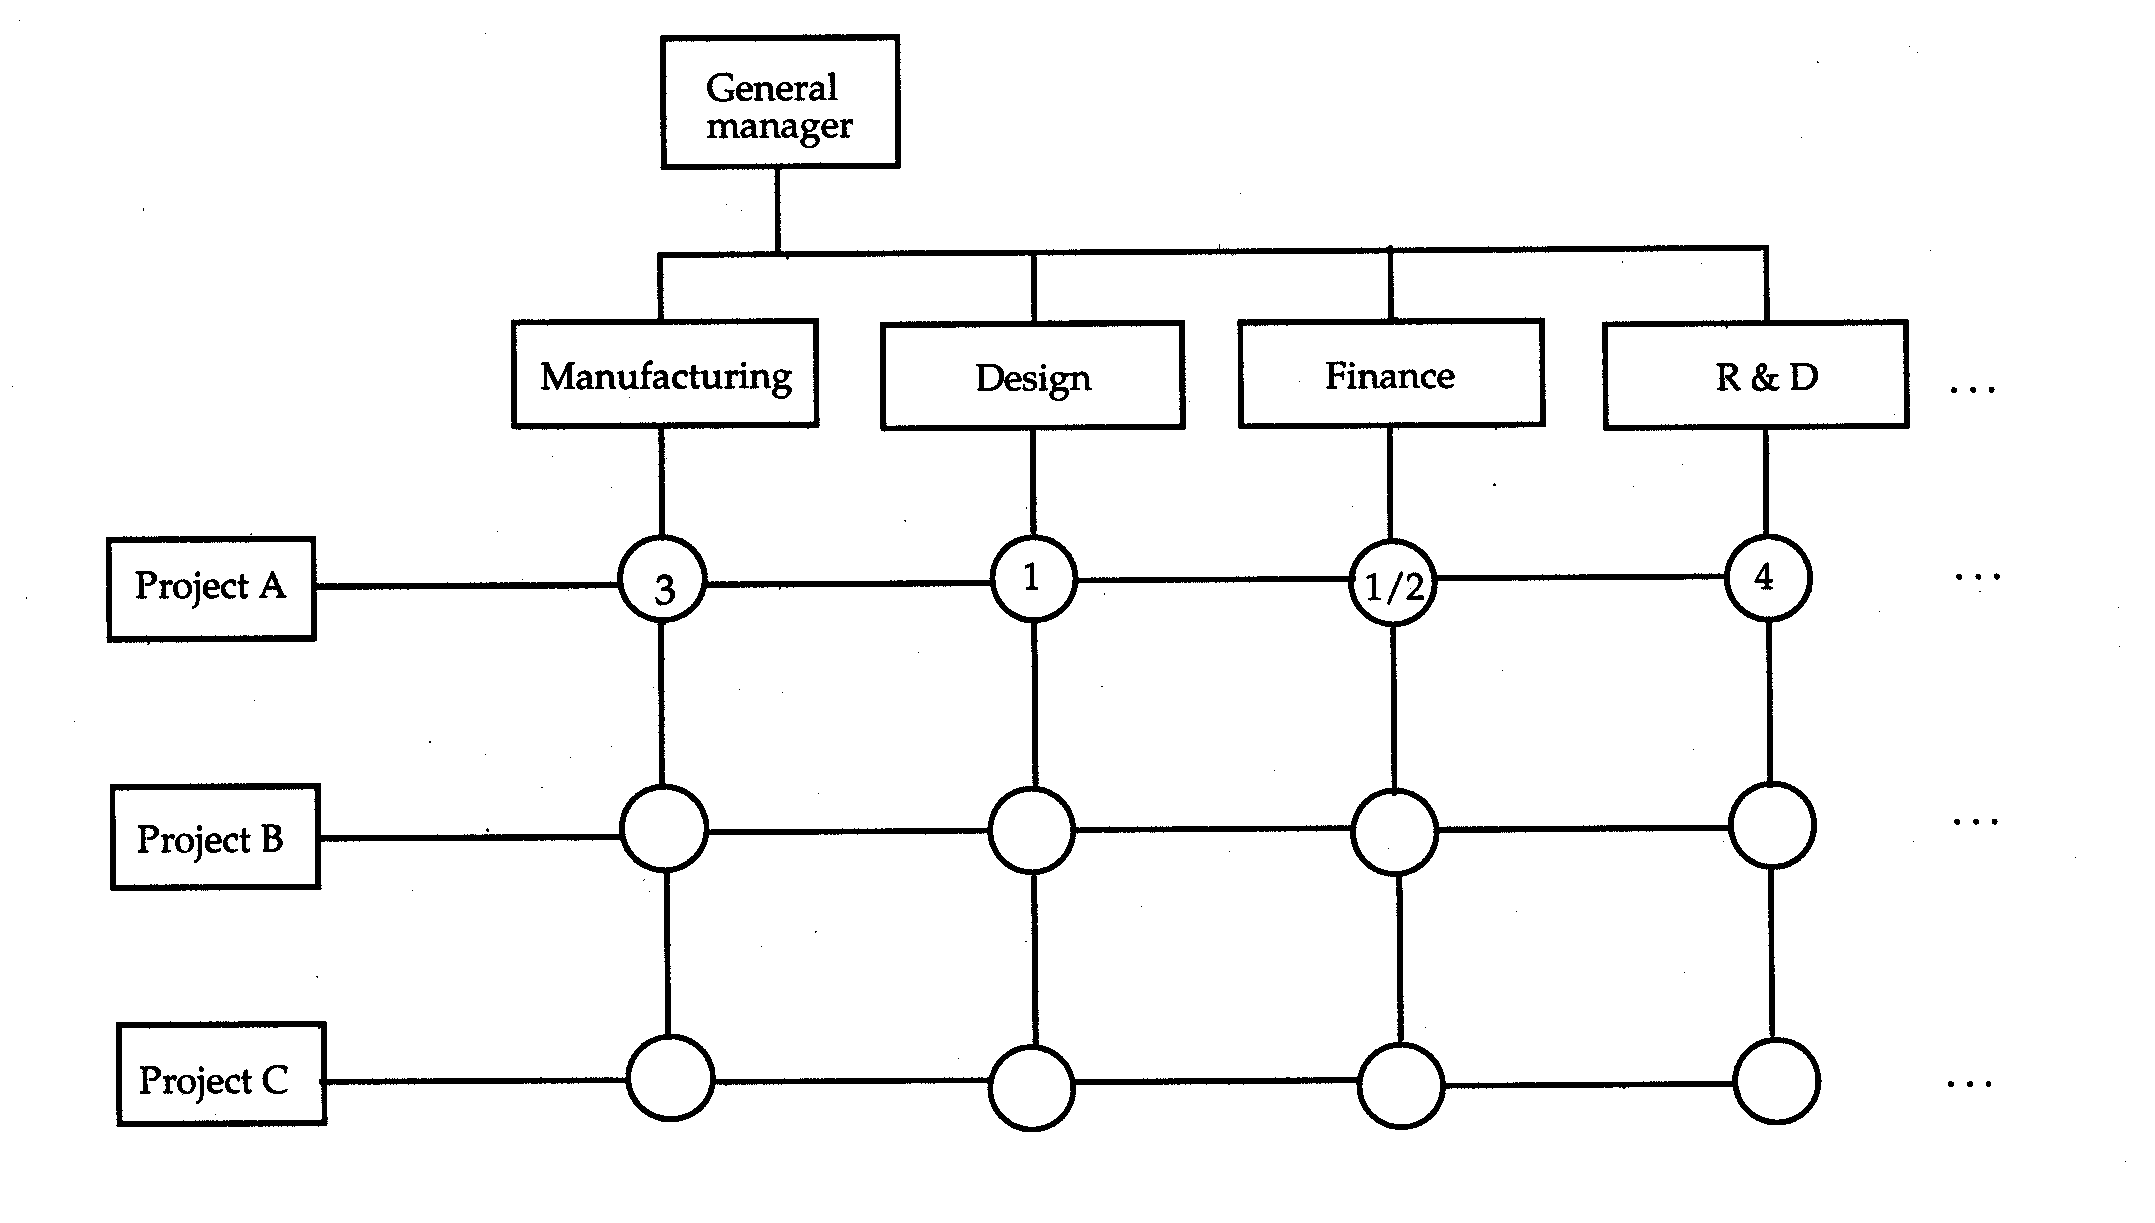 An effective matrix structure